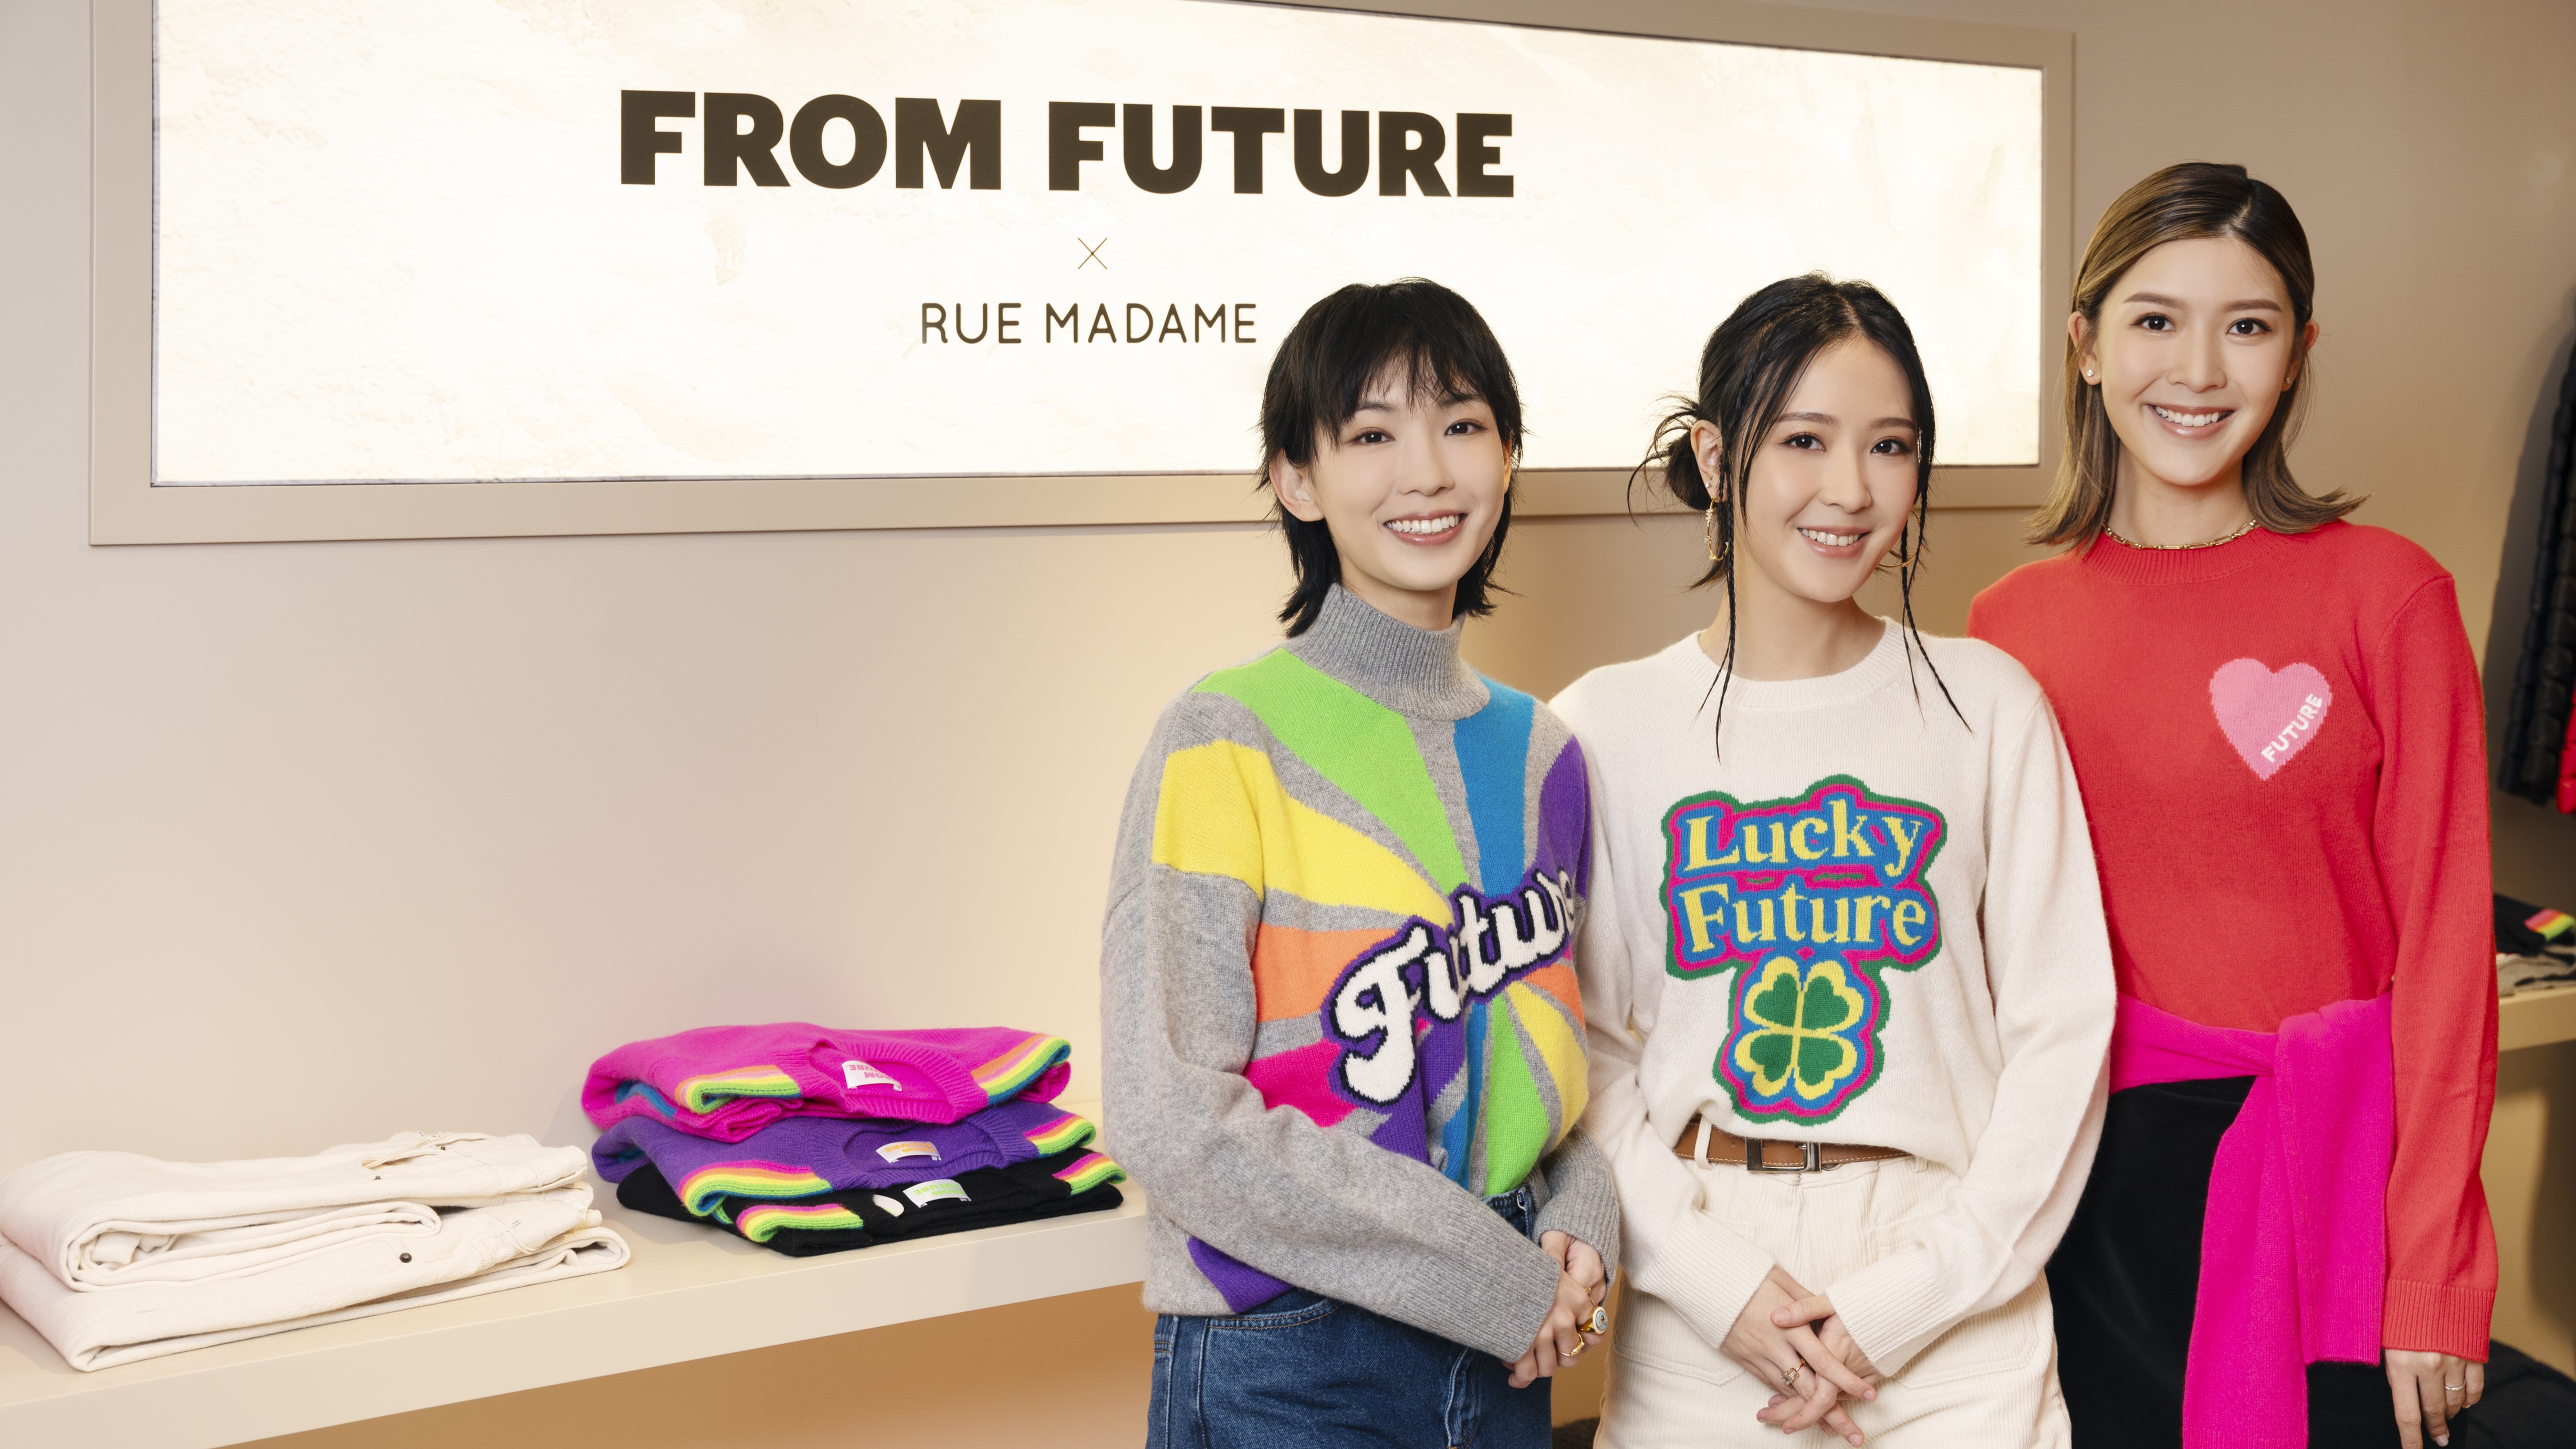 【時尚】法國小眾品牌登陸香港 彩虹色系點亮冬季穿搭